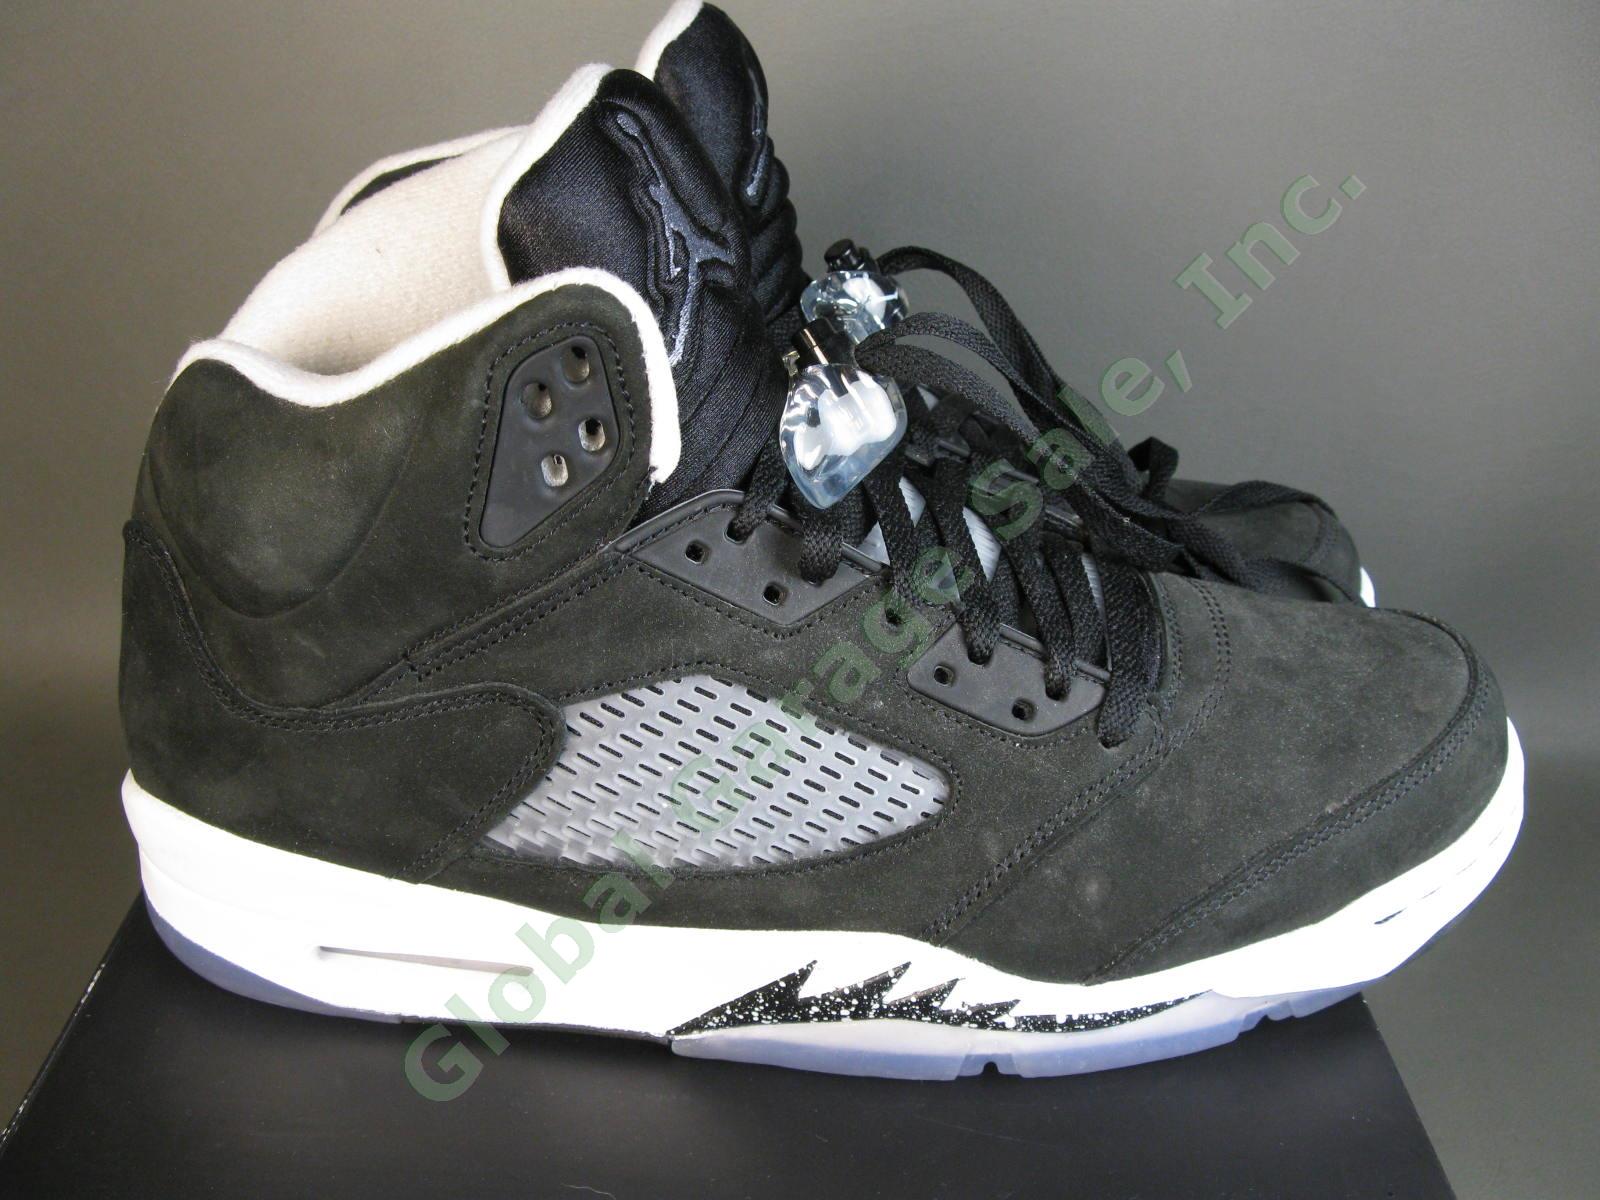 Nike Air Jordan AJ Retro 5 Moonlight Oreo Cookie CT4838 011 Black White US 11 NR 6